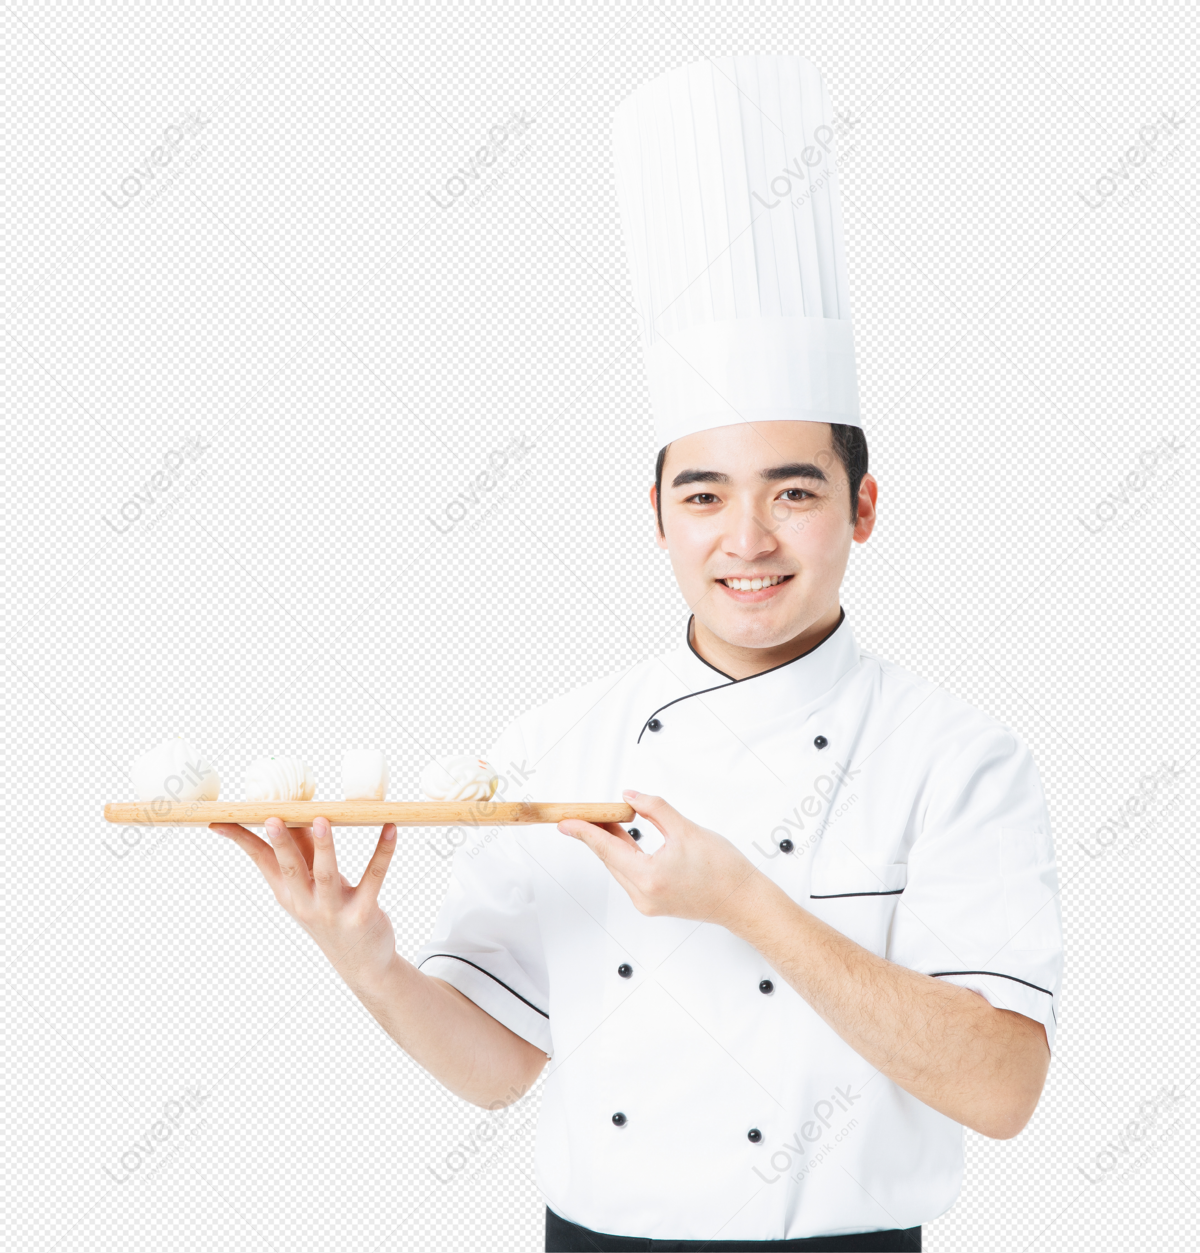 Hình ảnh Đầu Bếp Cầm Bánh Mì PNG Miễn Phí Tải Về - Lovepik